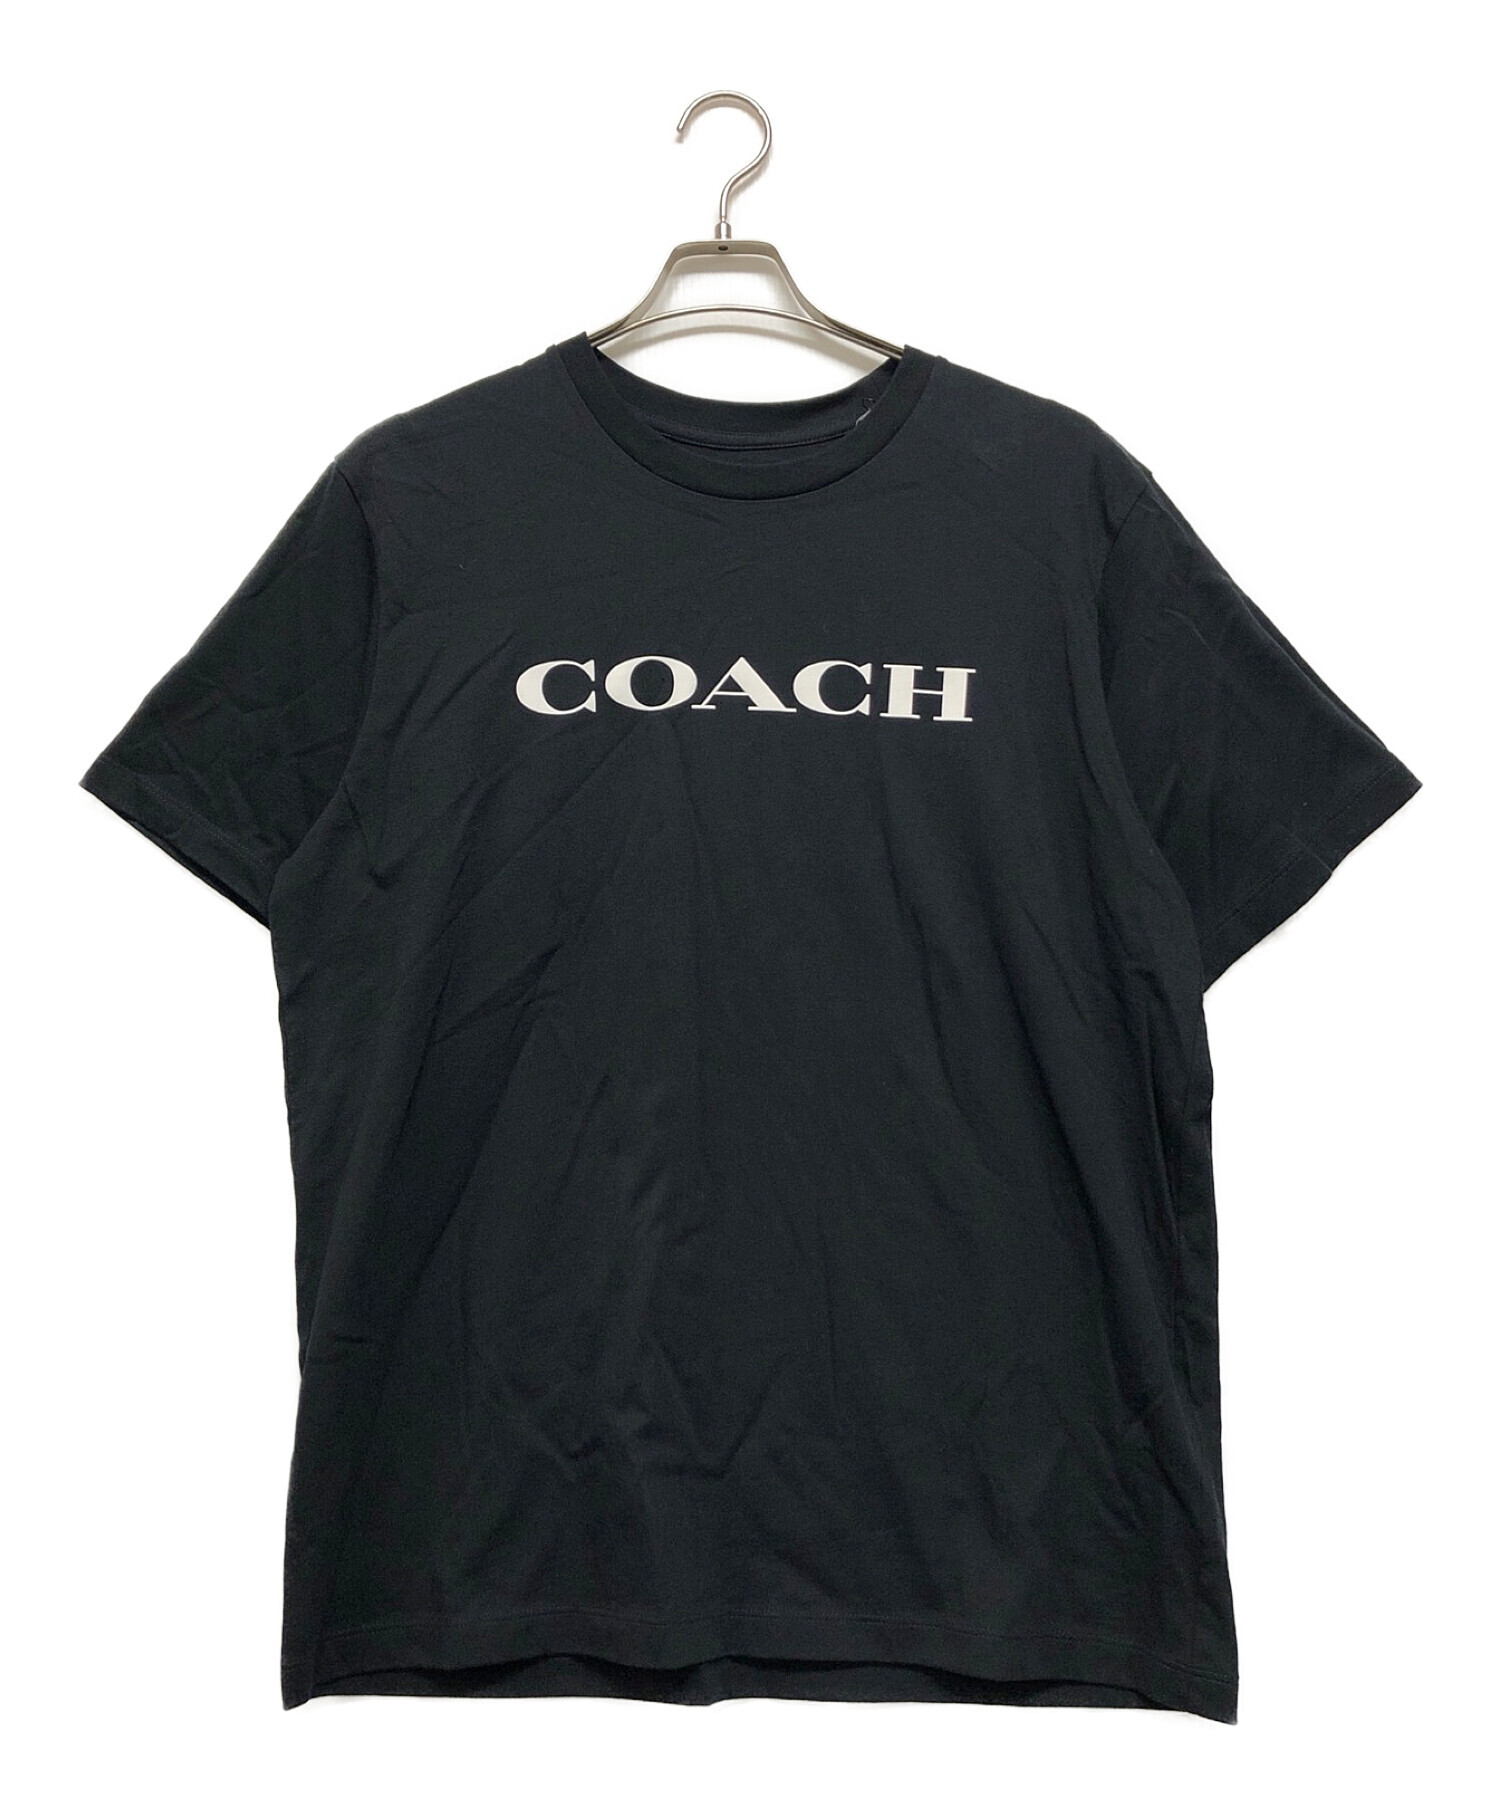 COACH (コーチ) ロゴTシャツ ブラック サイズ:SIZE L 未使用品